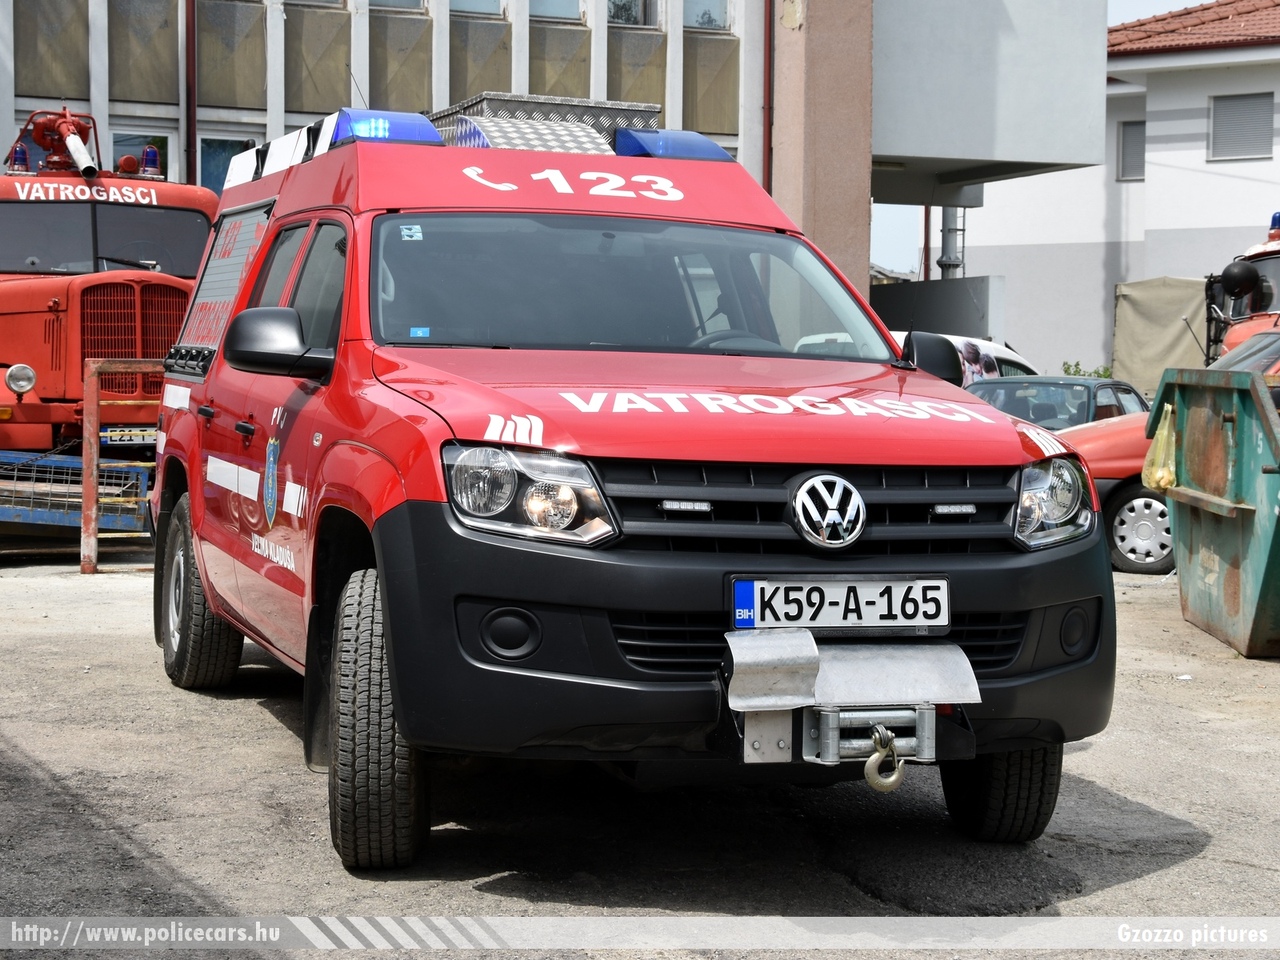 Volkswagen Amarok, Velika Kladu¹a, fotó: Gzozzo pictures
Keywords: Bosznia-Hercegovina tûzoltó tûzoltóautó tûzoltóság bosnia bosnia-herzegovina fire firetruck kladusa 